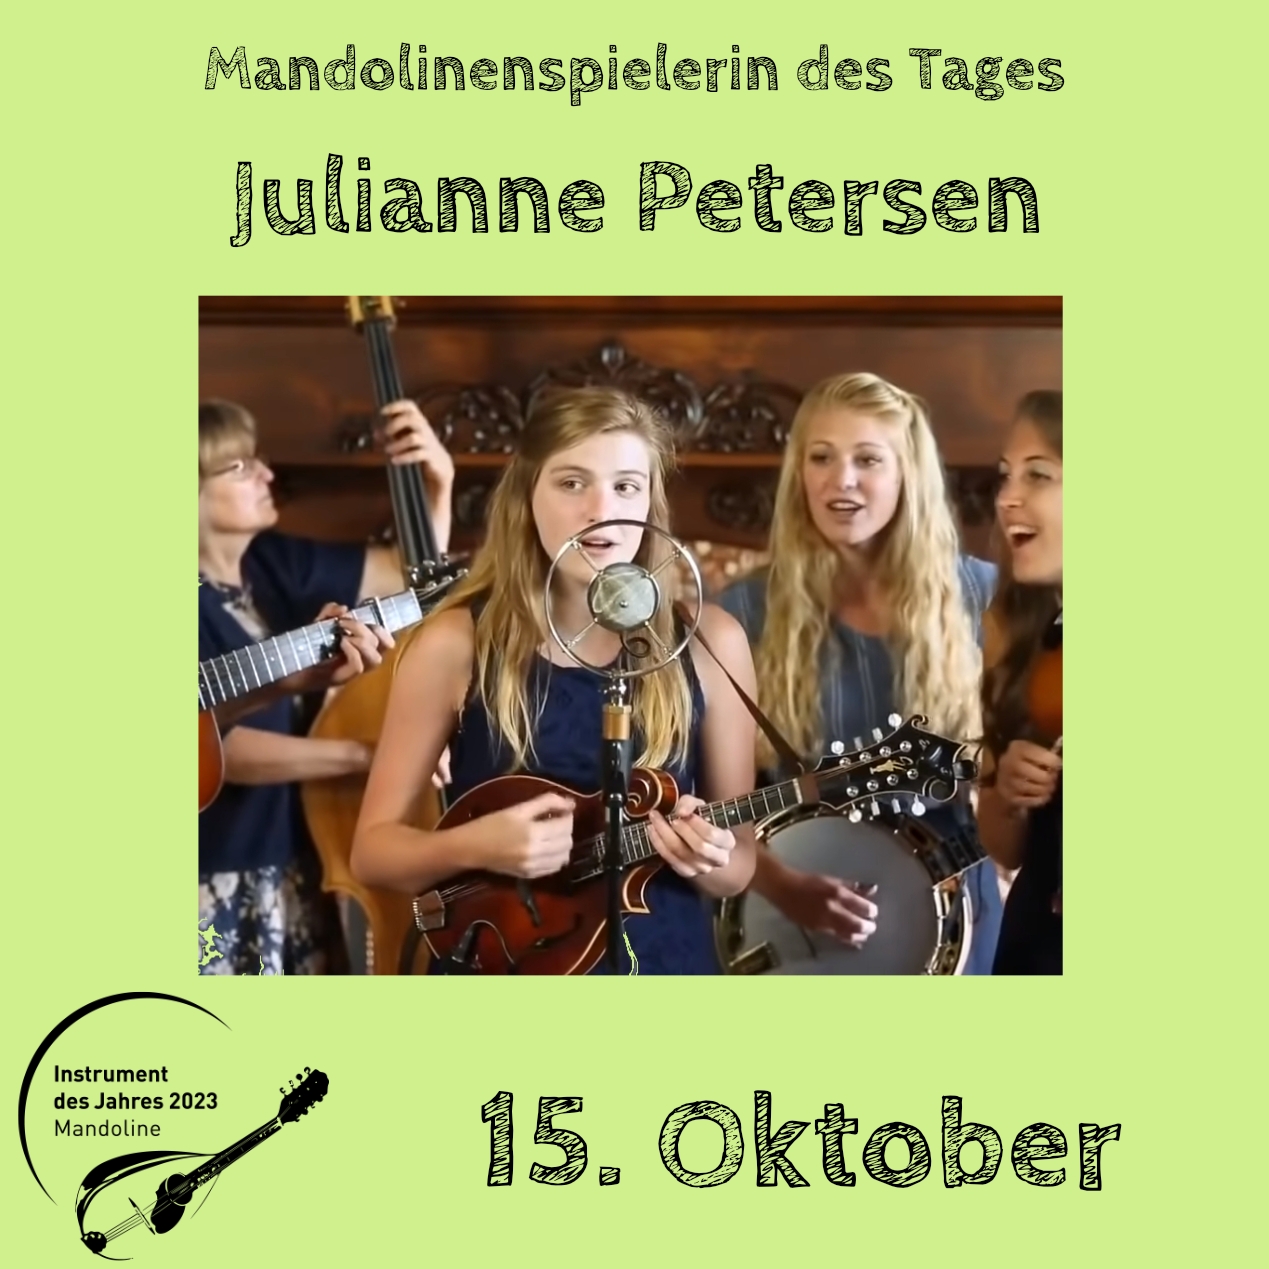 15. Oktober - Julianne Petersen Instrument des Jahres 2023 Mandolinenspieler Mandolinenspielerin des Tages